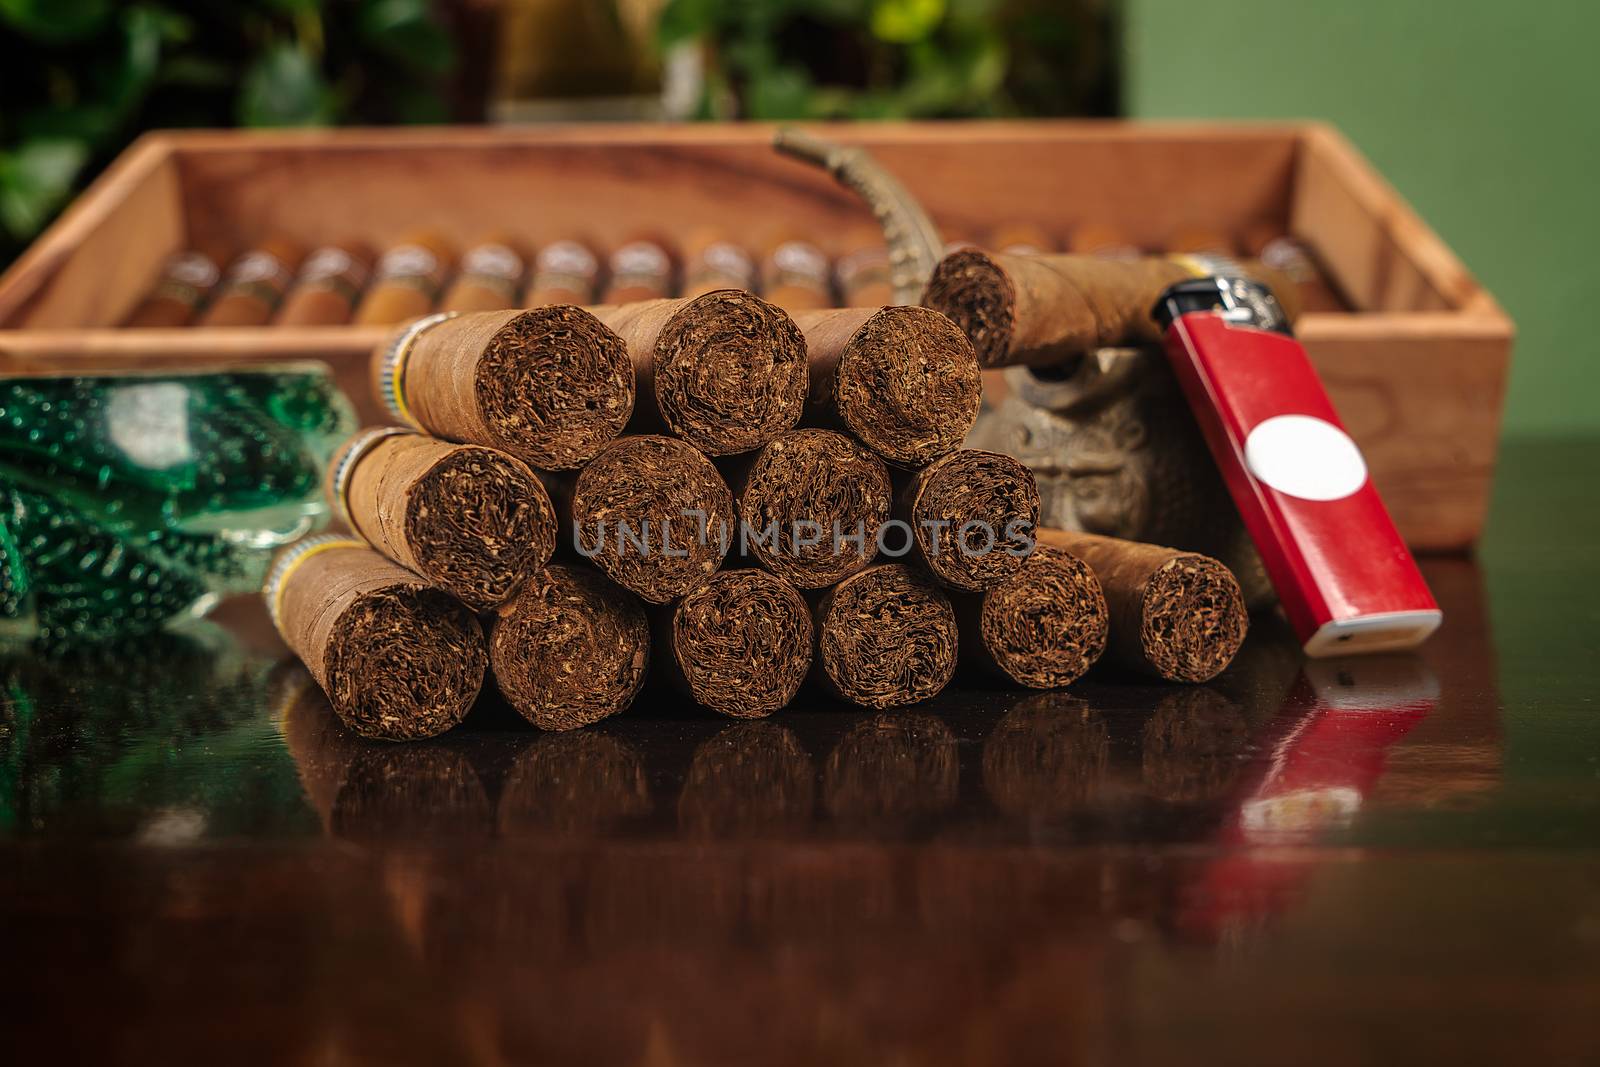 Cigars by jrivalta